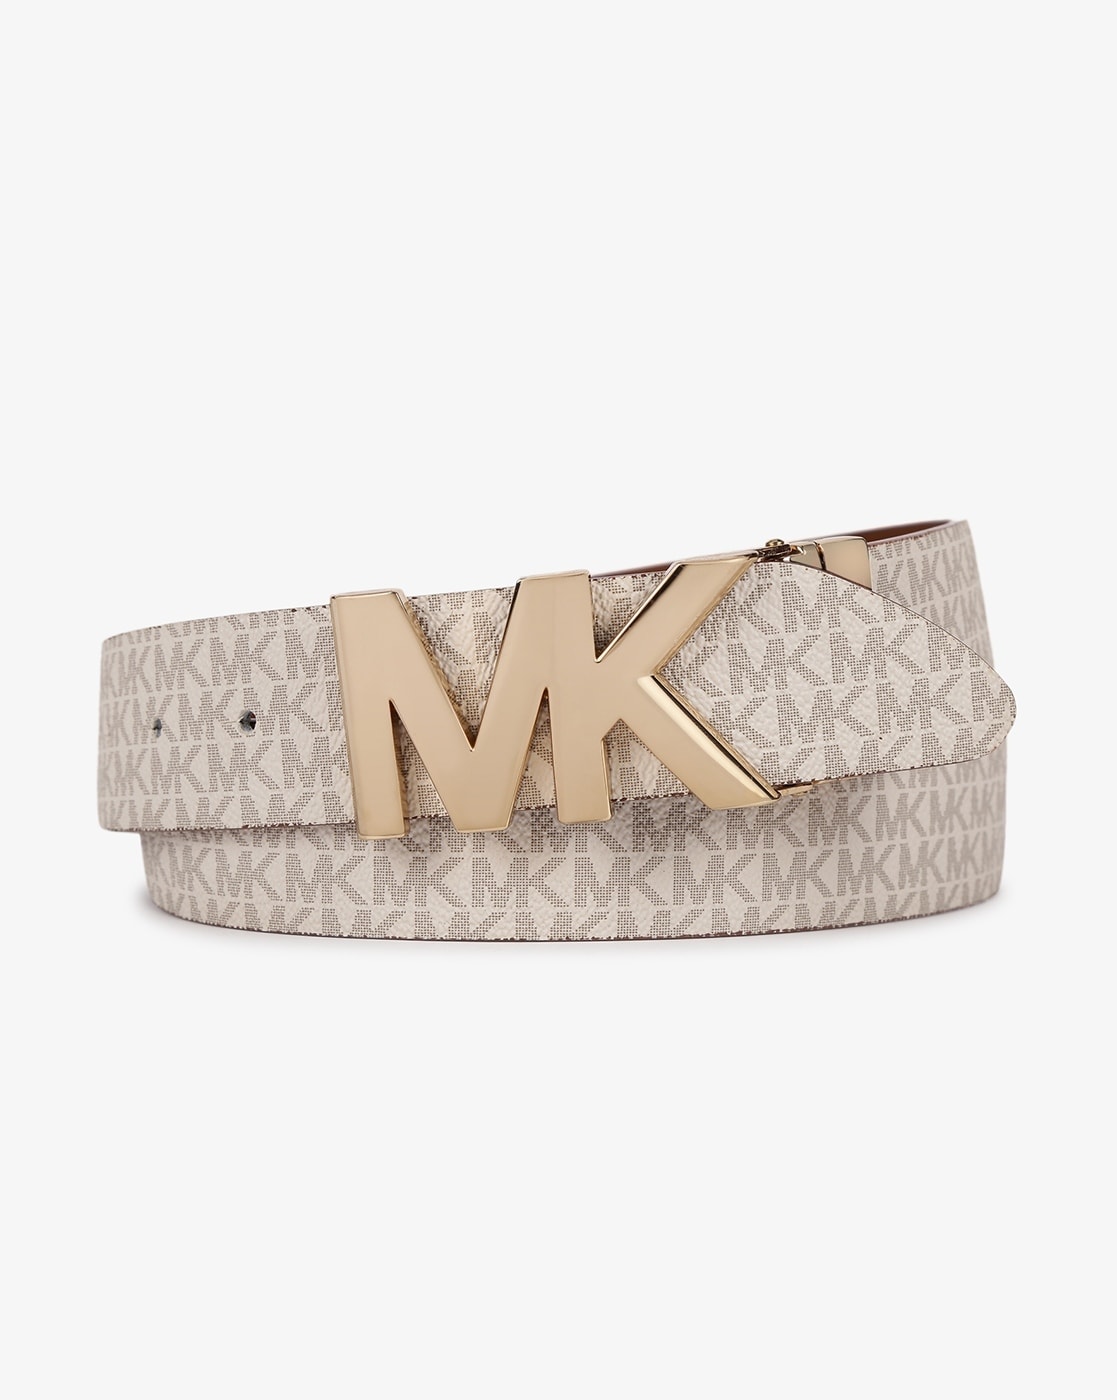 Michael Kors Women's Twist Reversible 30mm MK Logo Leather Belt